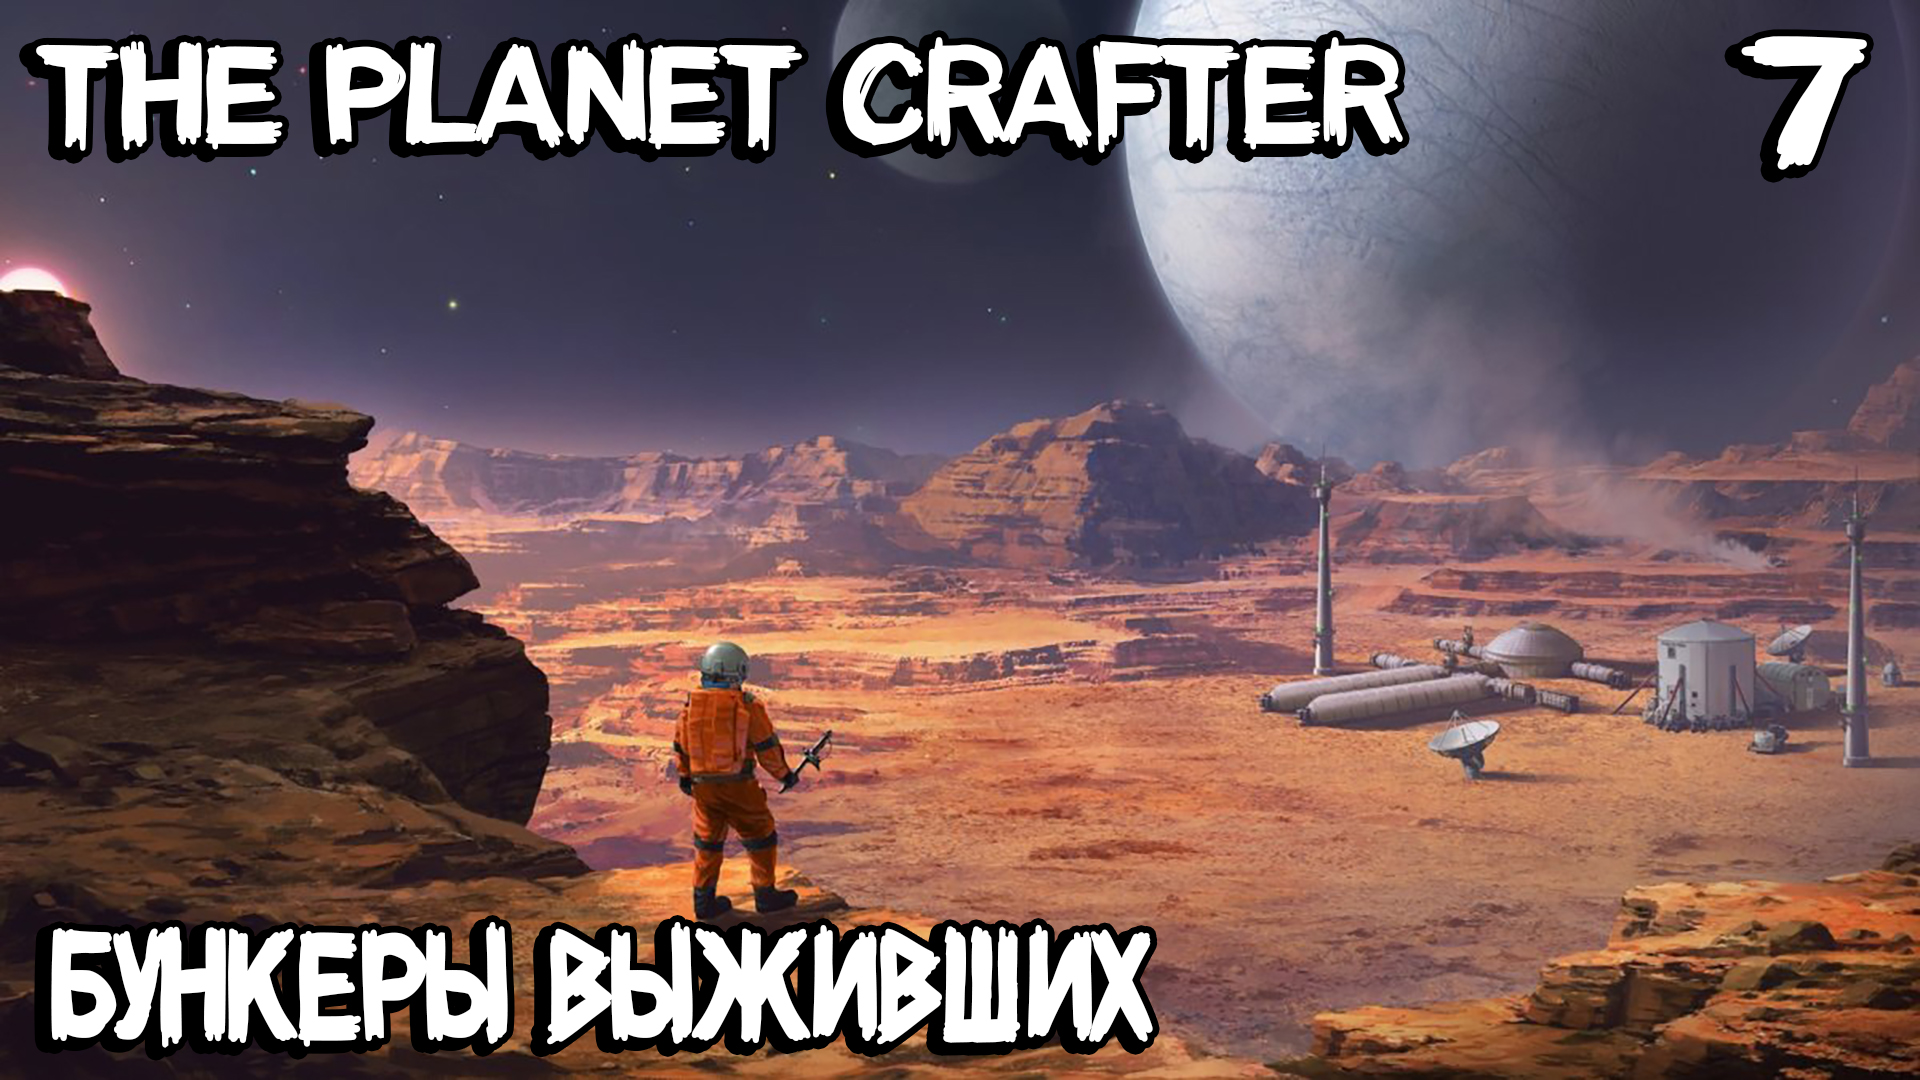 The Planet Crafter - посещаю бункеры выживших, урановую пещеру и космические врата #7